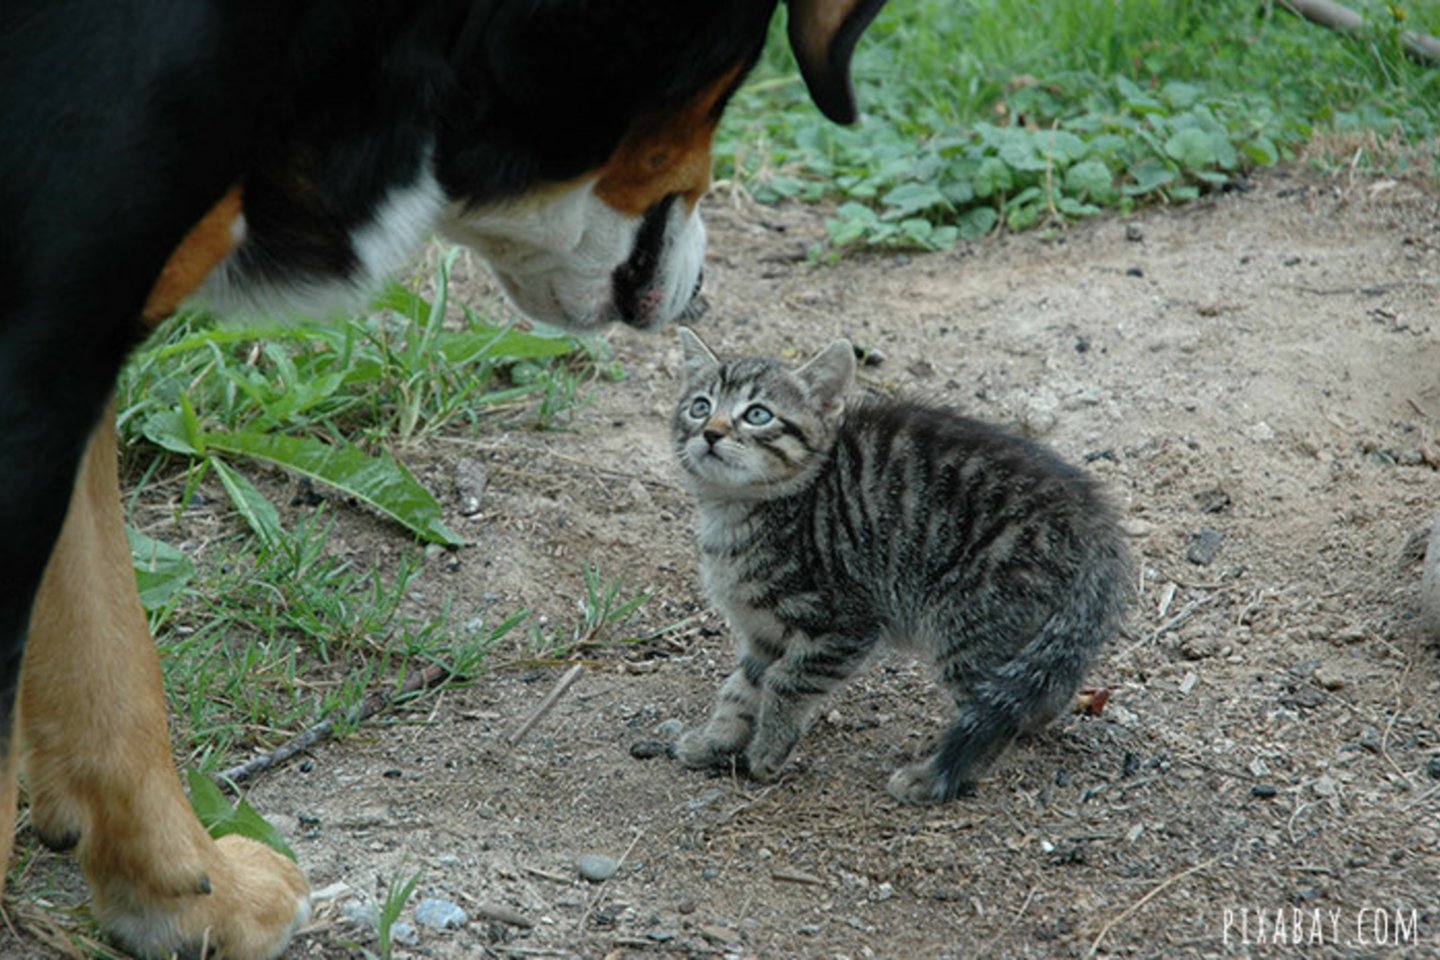  Augintinių kūno kalbos skirtumai, arba kodėl šuo ir katė nesutaria?<br> Pixabay.com nuotr.